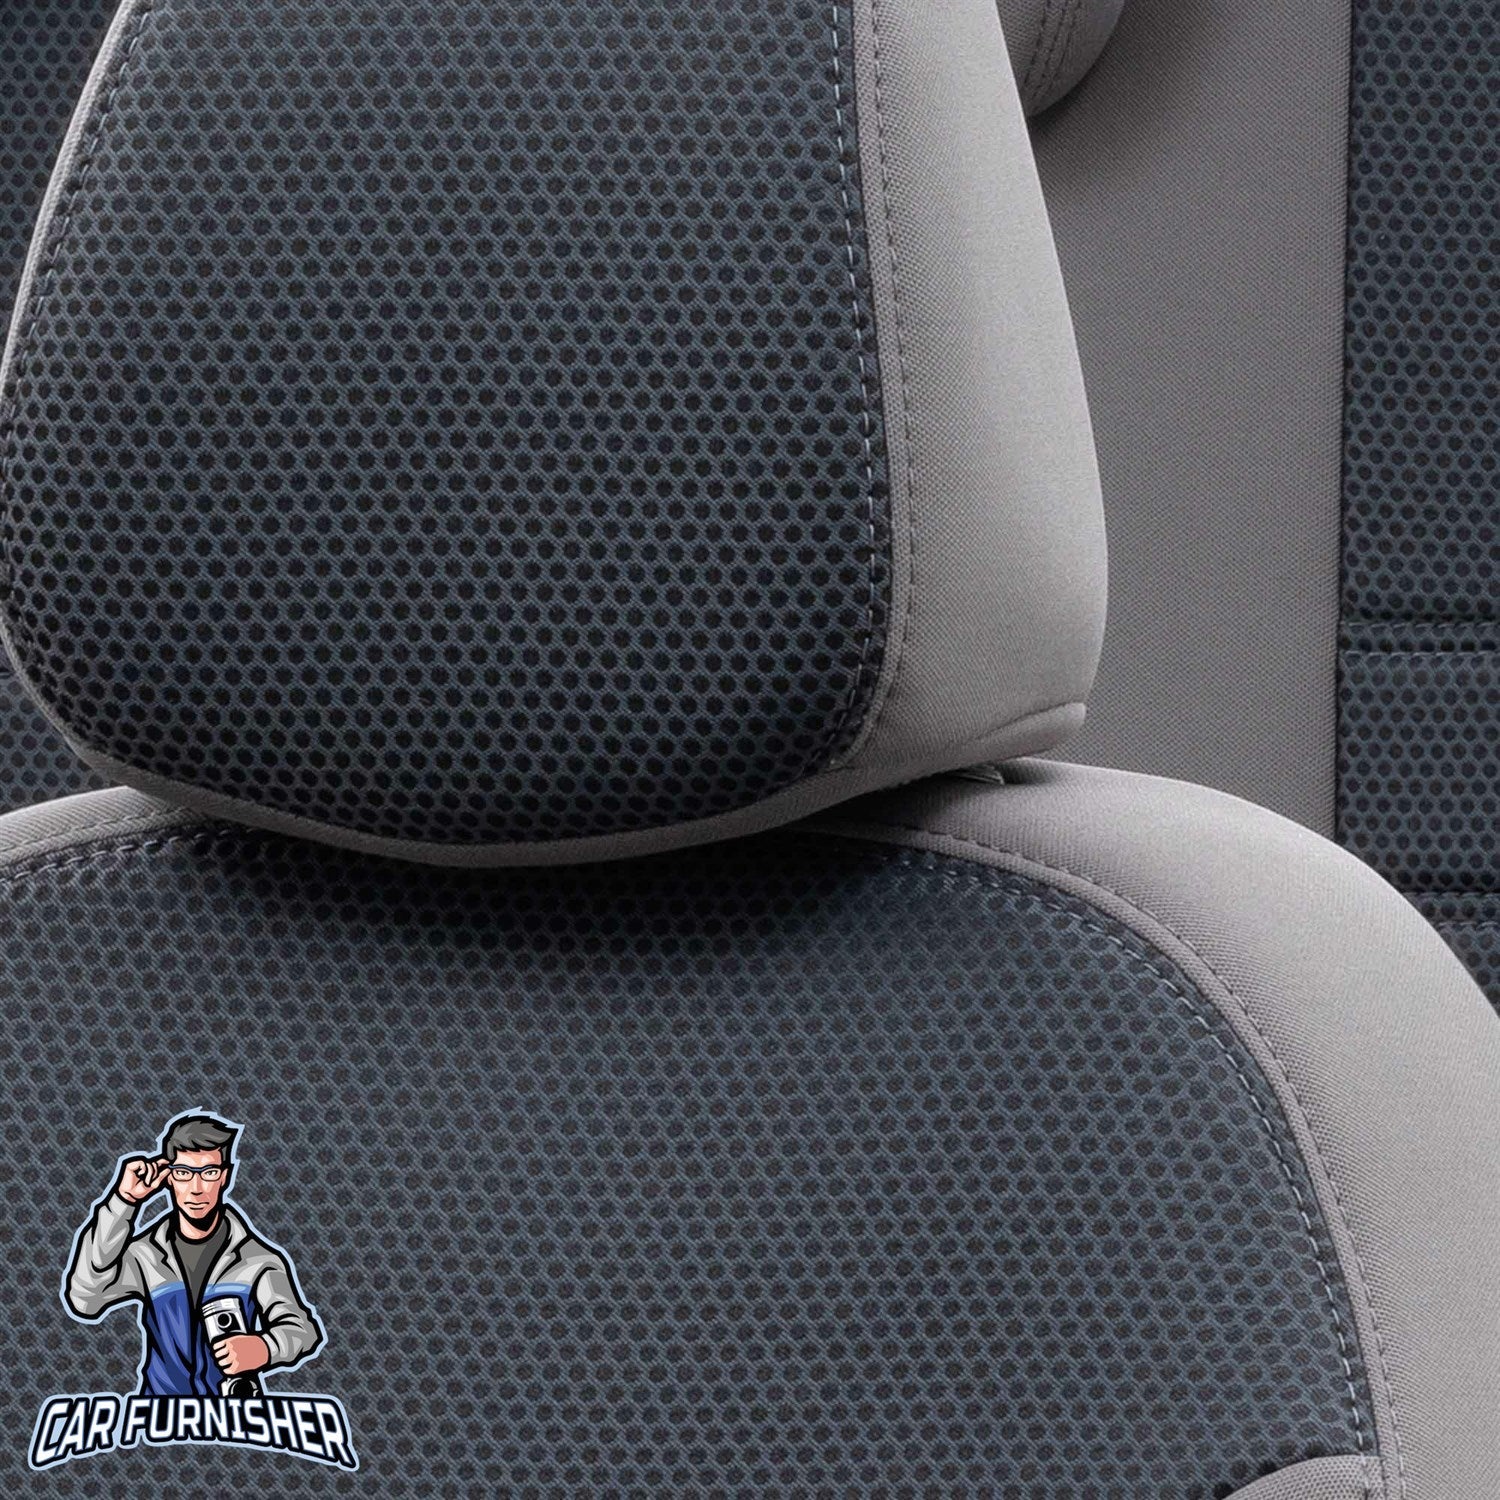 Mercedes E Class Seat Covers Original Jacquard Design Smoked Jacquard Fabric